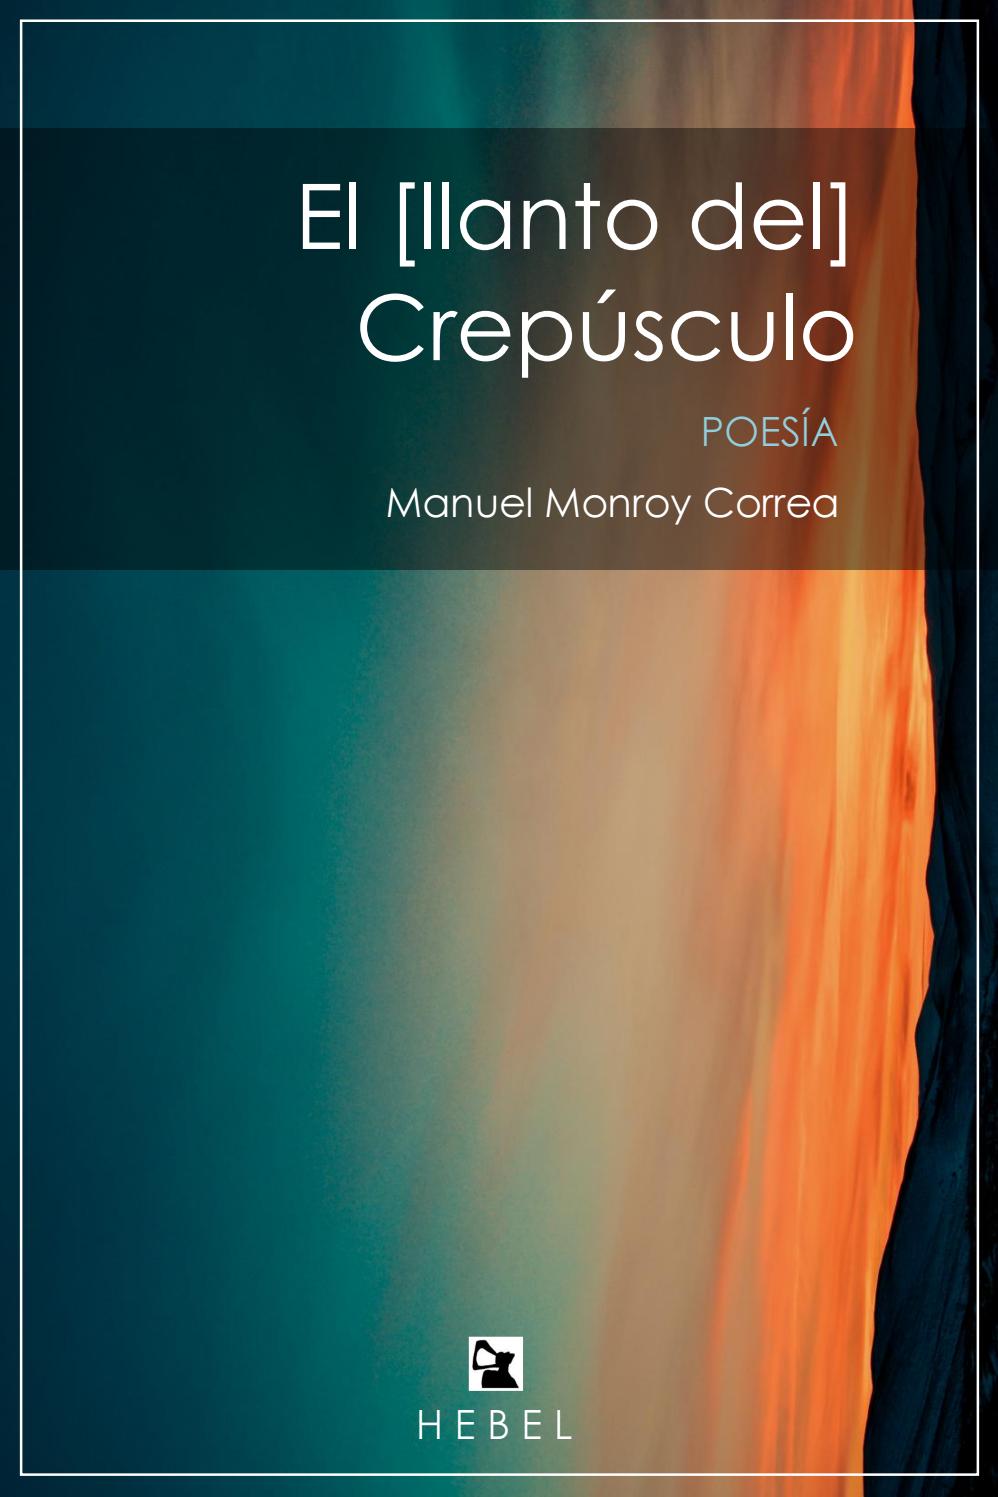 El [llanto del] Crepúsculo (Spanish language, Hebel Ediciones)